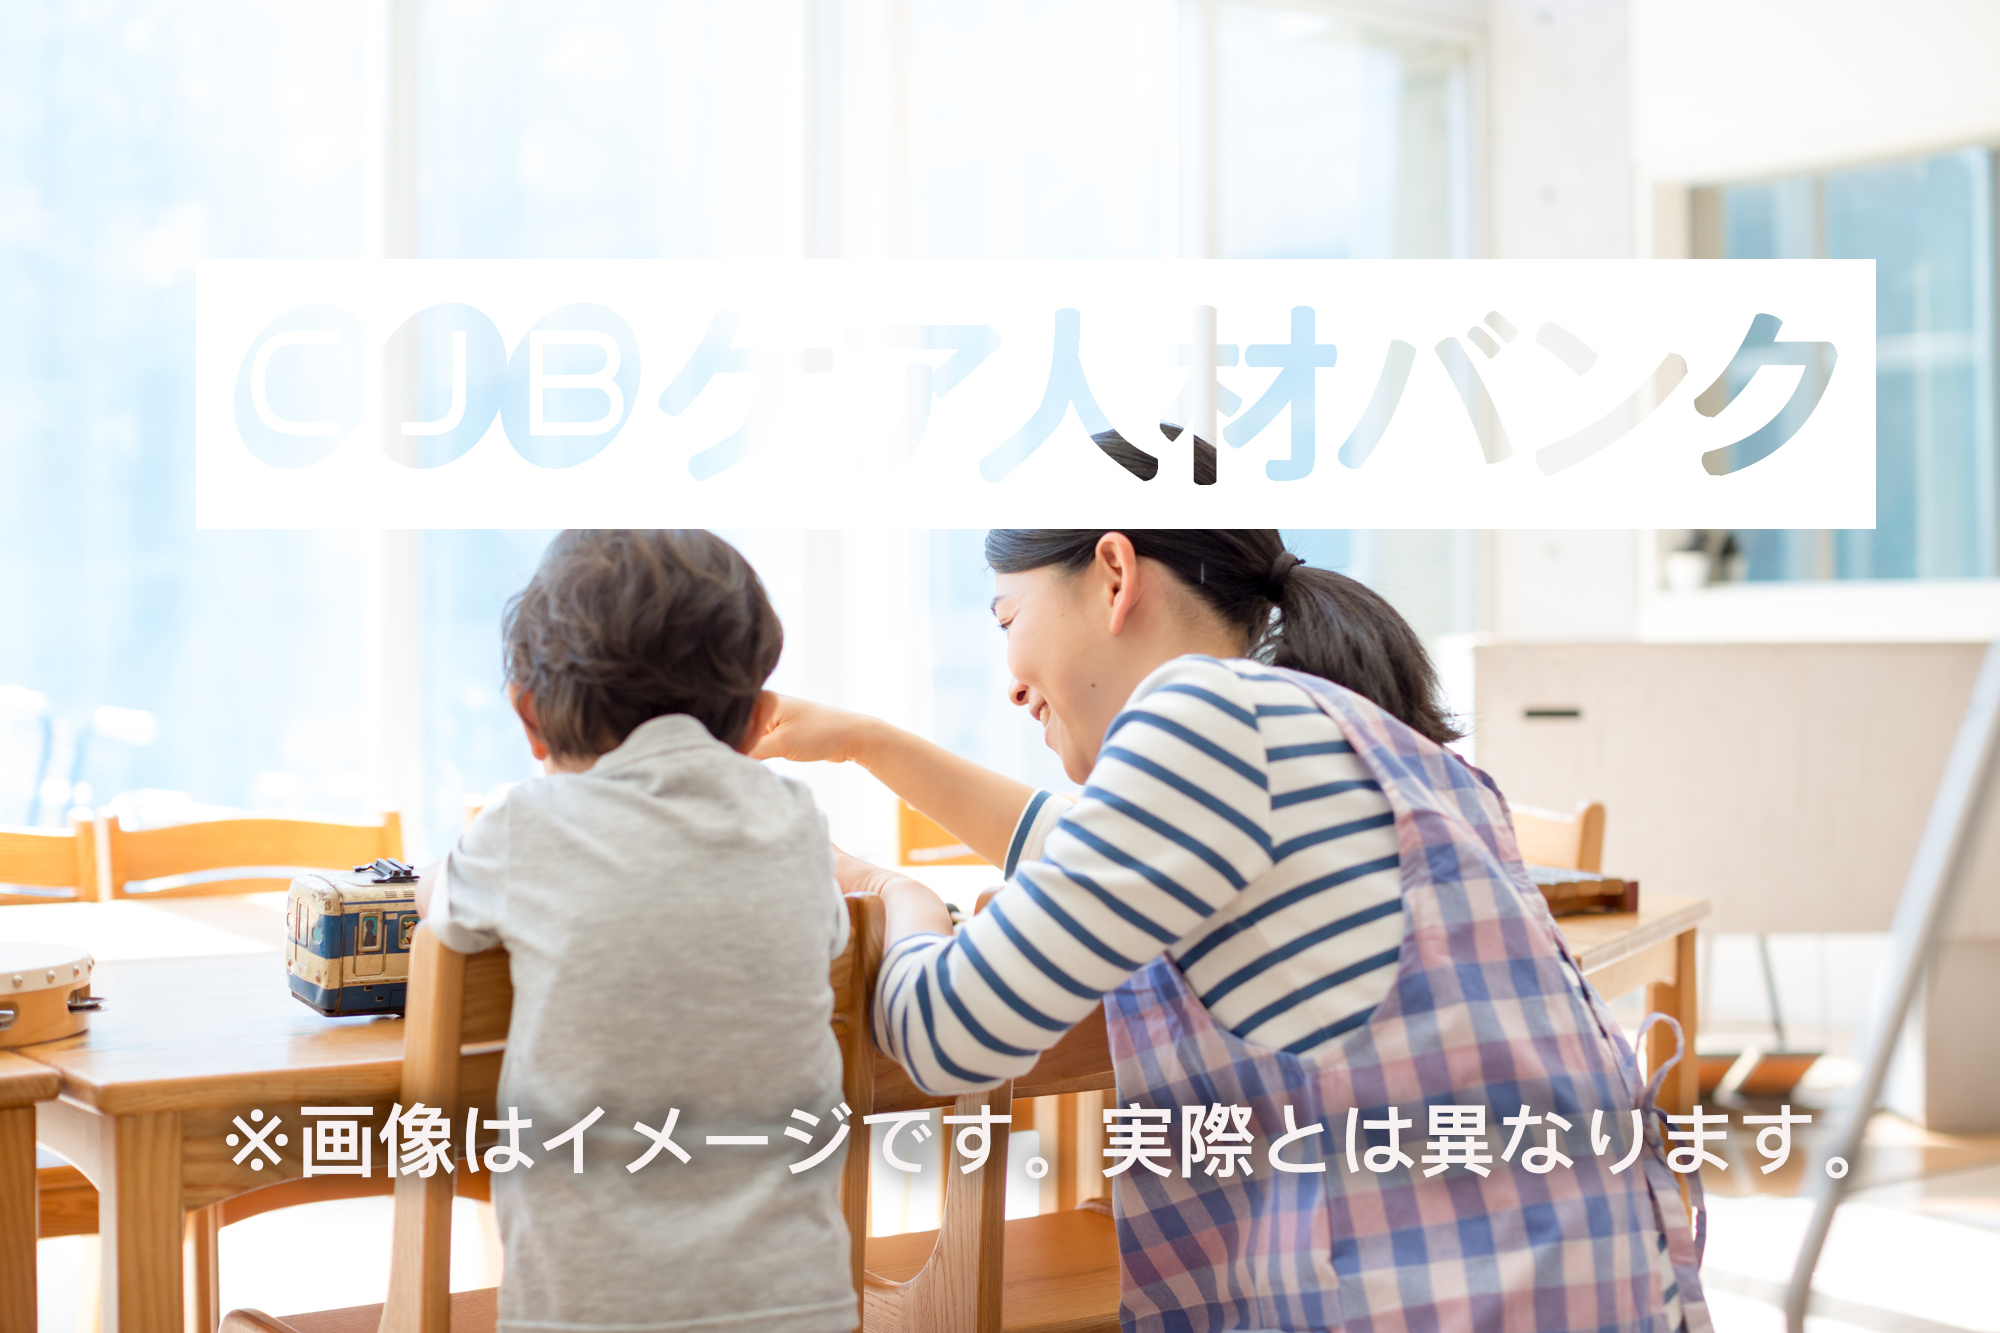 放課後等デイサービス「ココカラLIFE」新潟教室 のイメージ画像